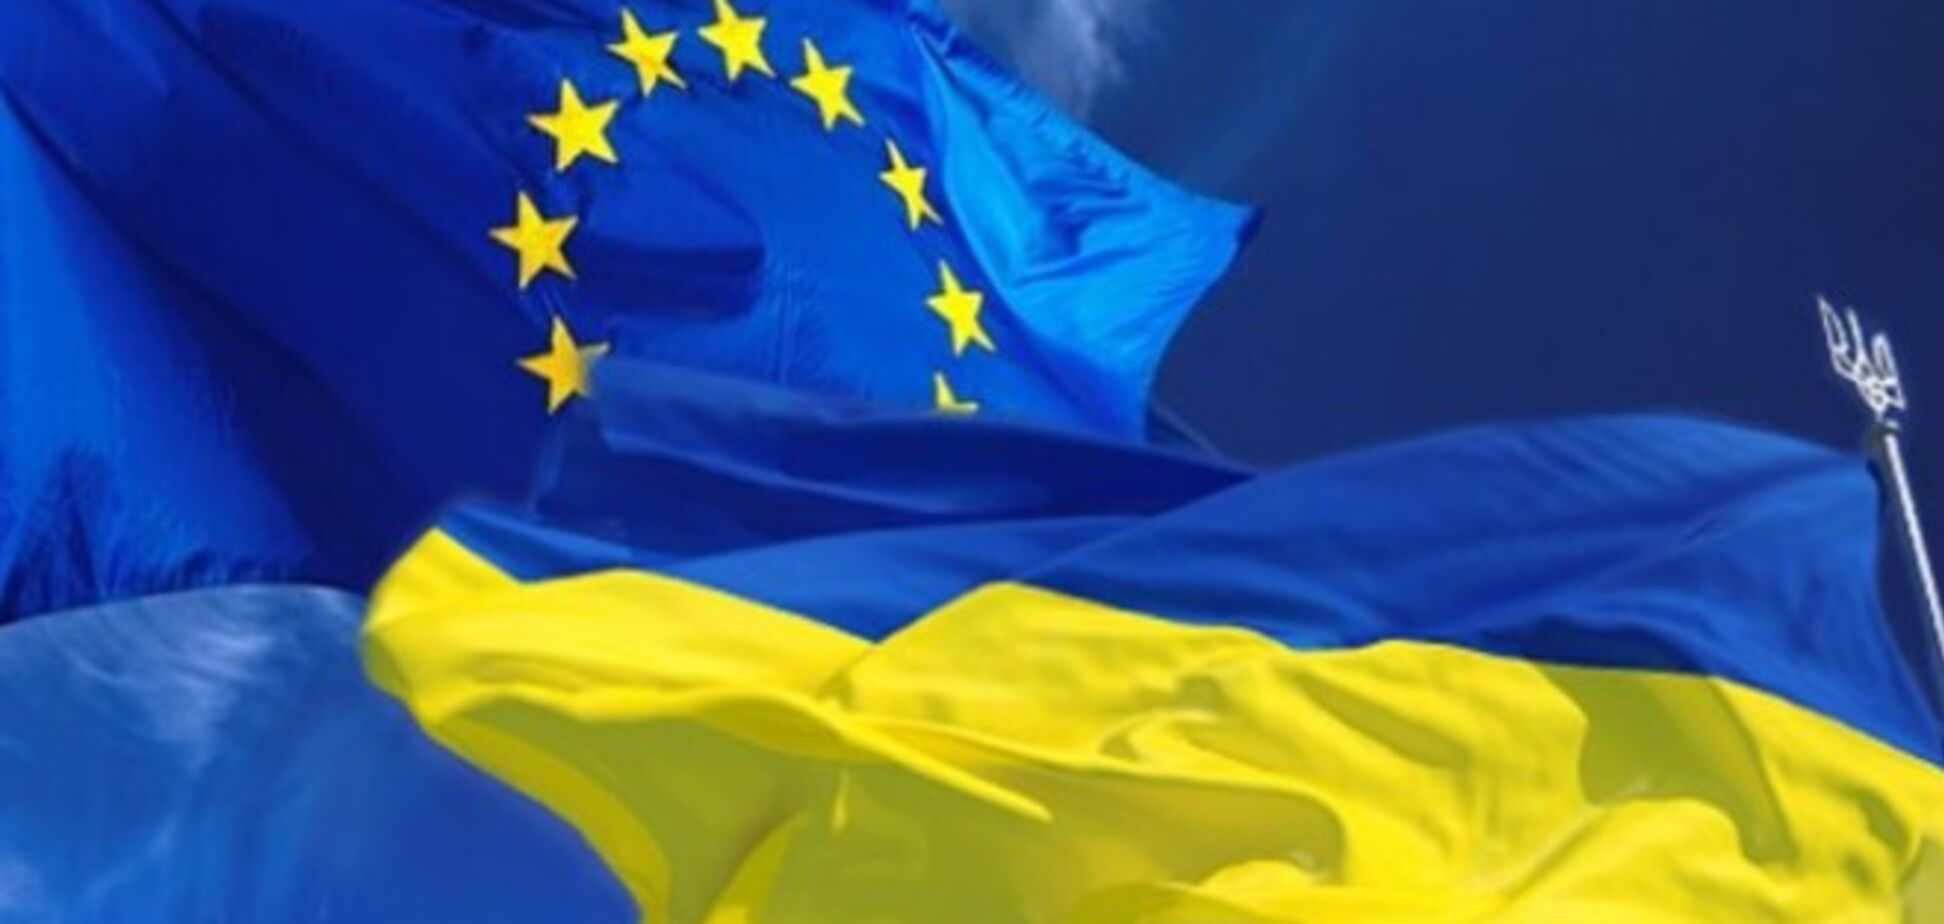 Украина и ЕС выполнили все формальности для запуска Ассоциации с 1 ноября